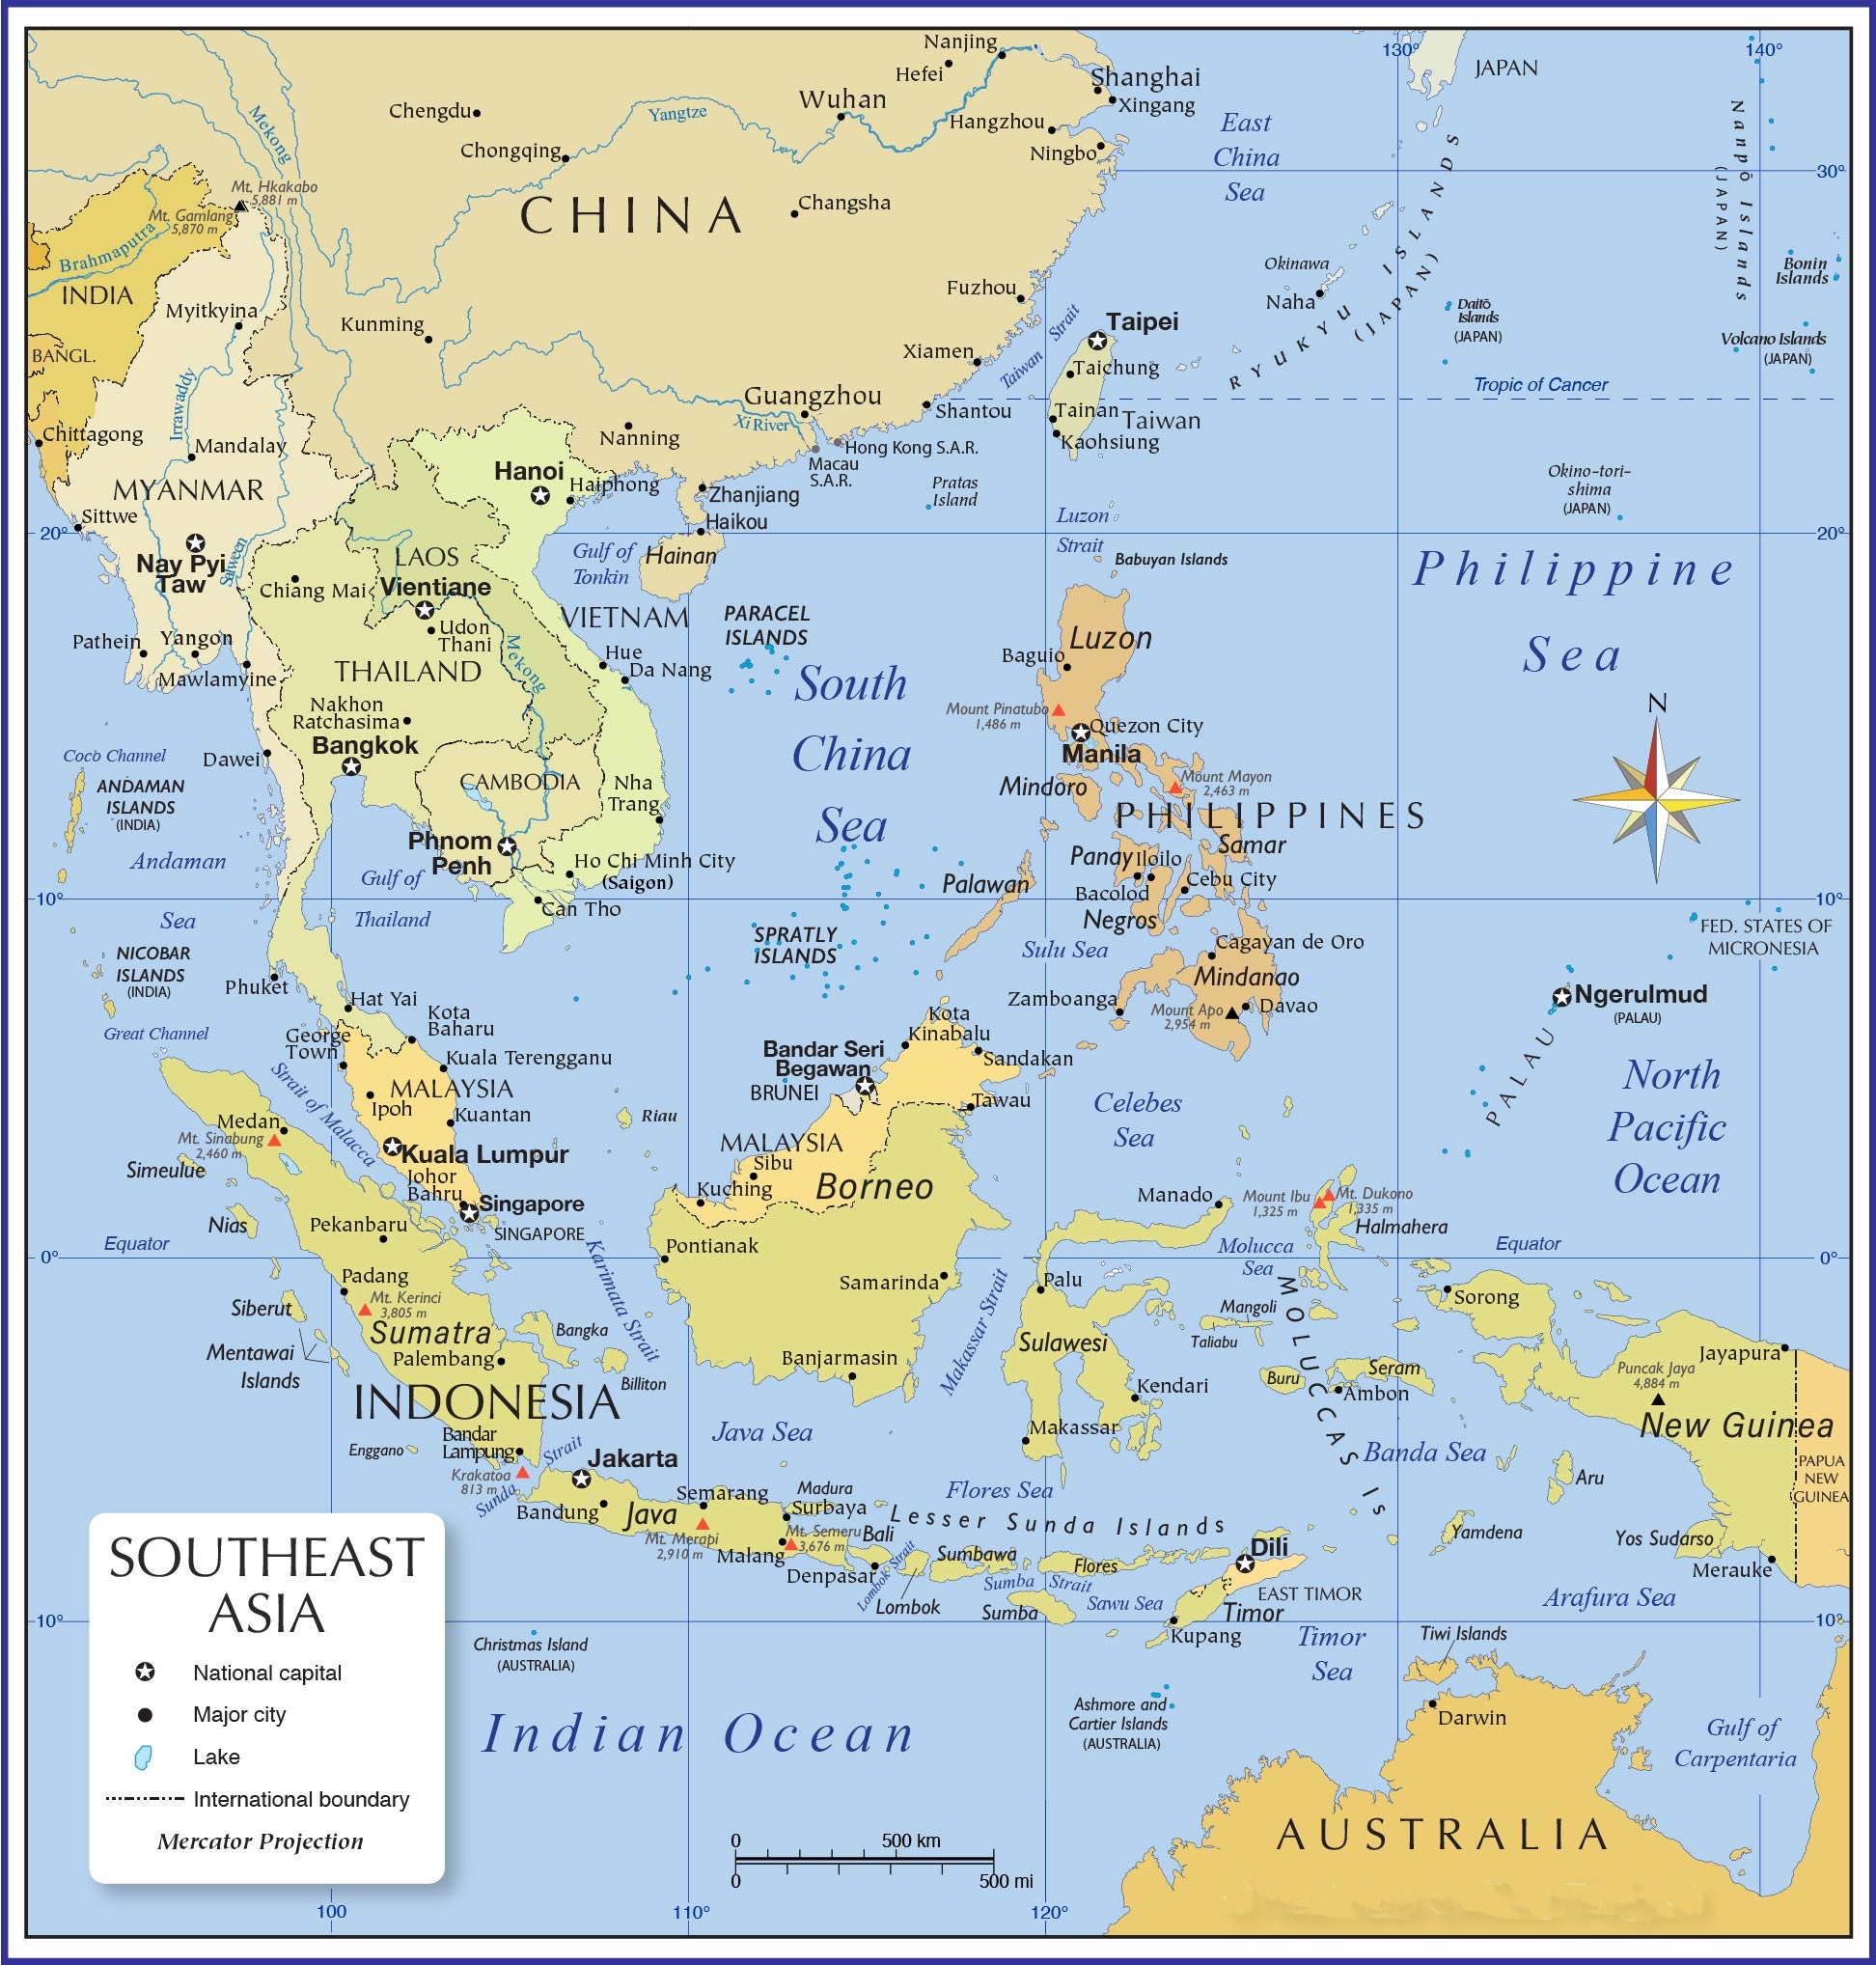 Bạn muốn phóng to bản đồ Đông Nam Á để nhìn rõ hơn các chi tiết trong bản đồ? Chỉ cần một cú nhấp chuột, bạn đã có thể phóng to bản đồ và xem rõ hơn các thông tin địa lý và văn hóa trong khu vực.